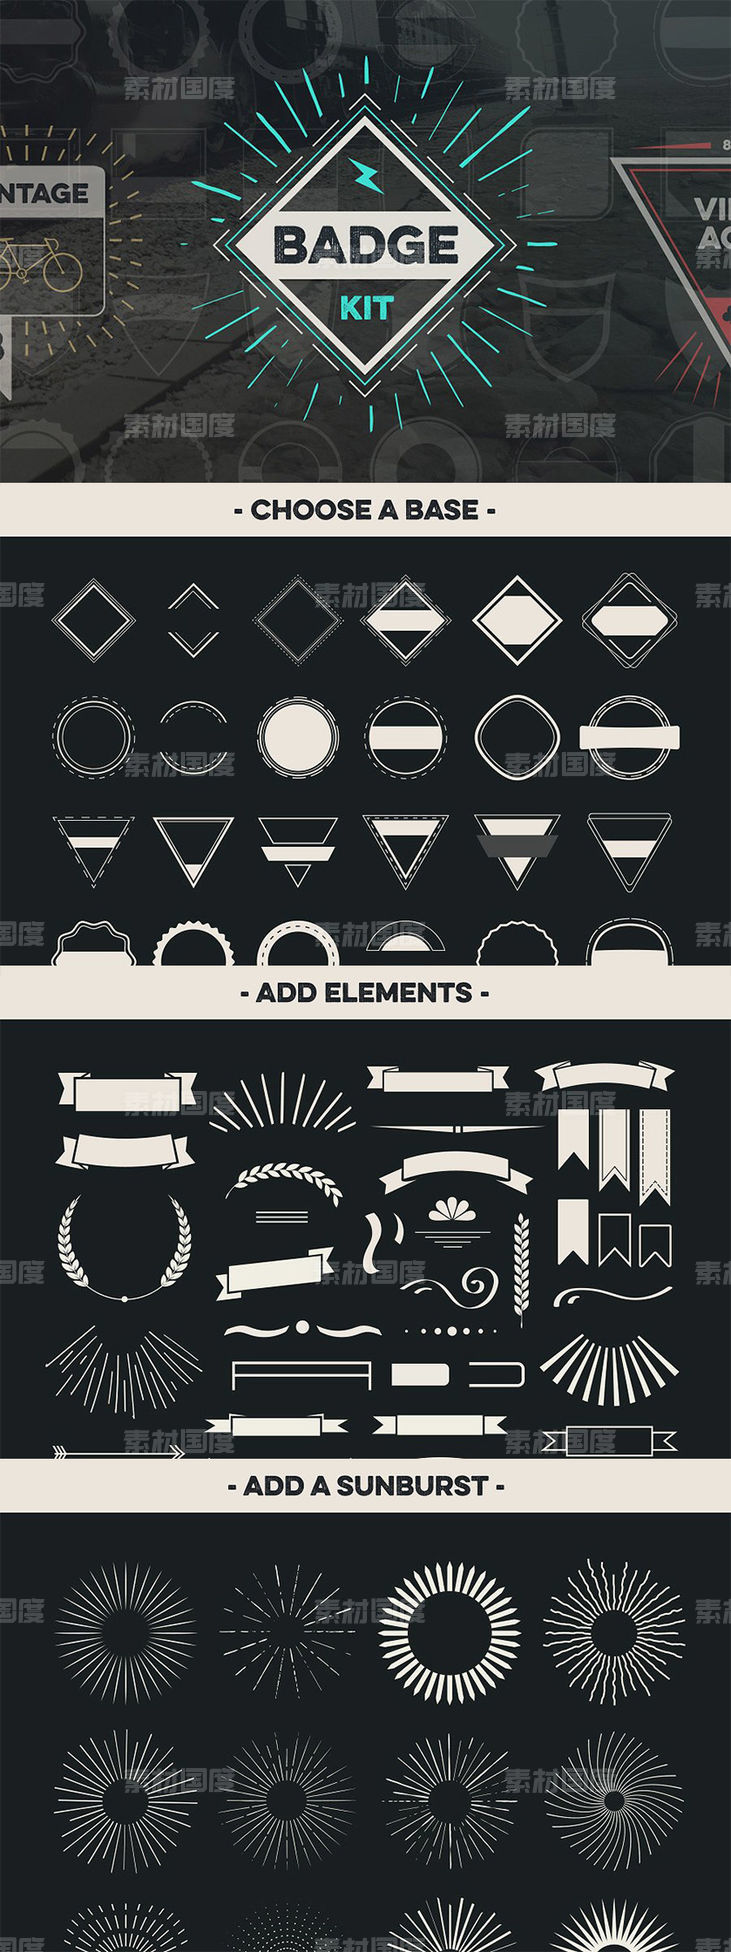 复古设计风格徽章设计素材工具包v2 Badge Creator Kit Vol.2